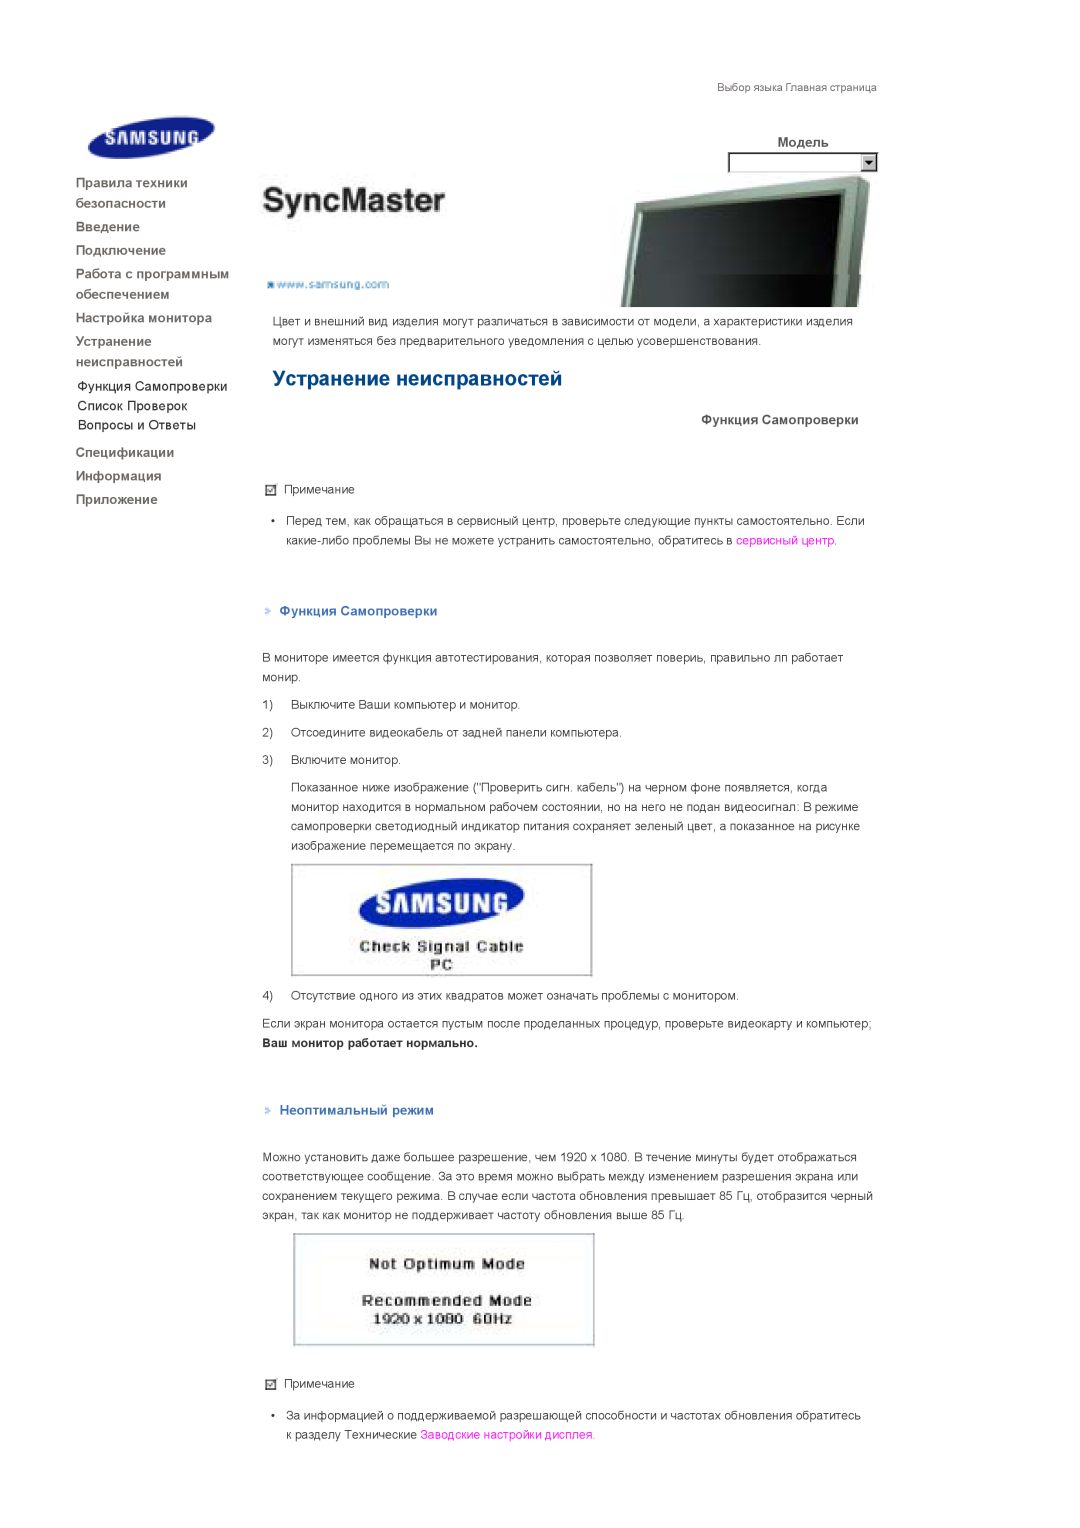 Samsung LS70BPTNB/EDC manual Устранение неисправностей, Спецификации Информация Приложение, Функция Самопроверки, Модель 